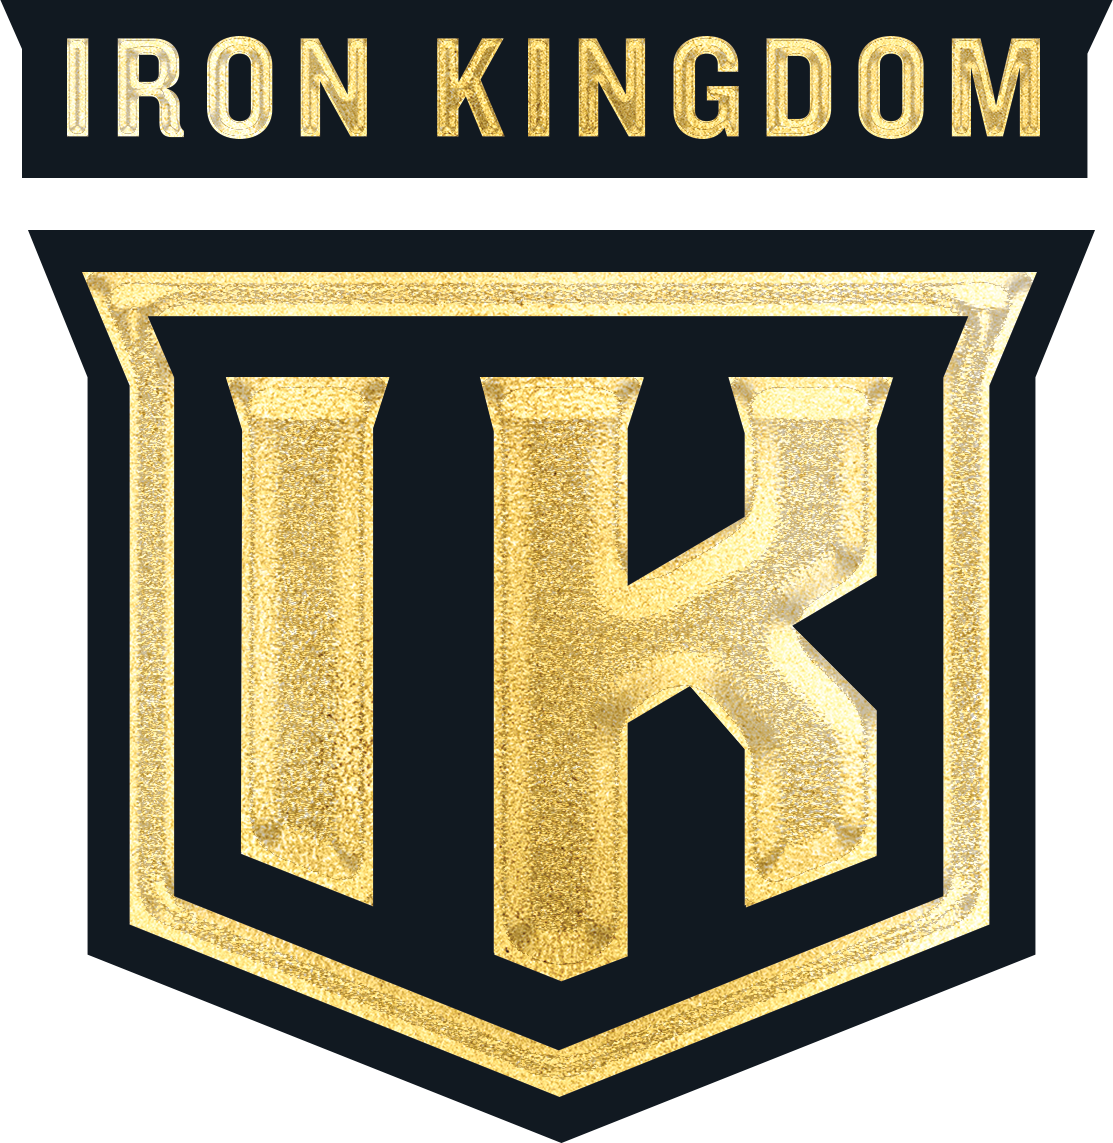 Iron Kingdom Sports Nutrition